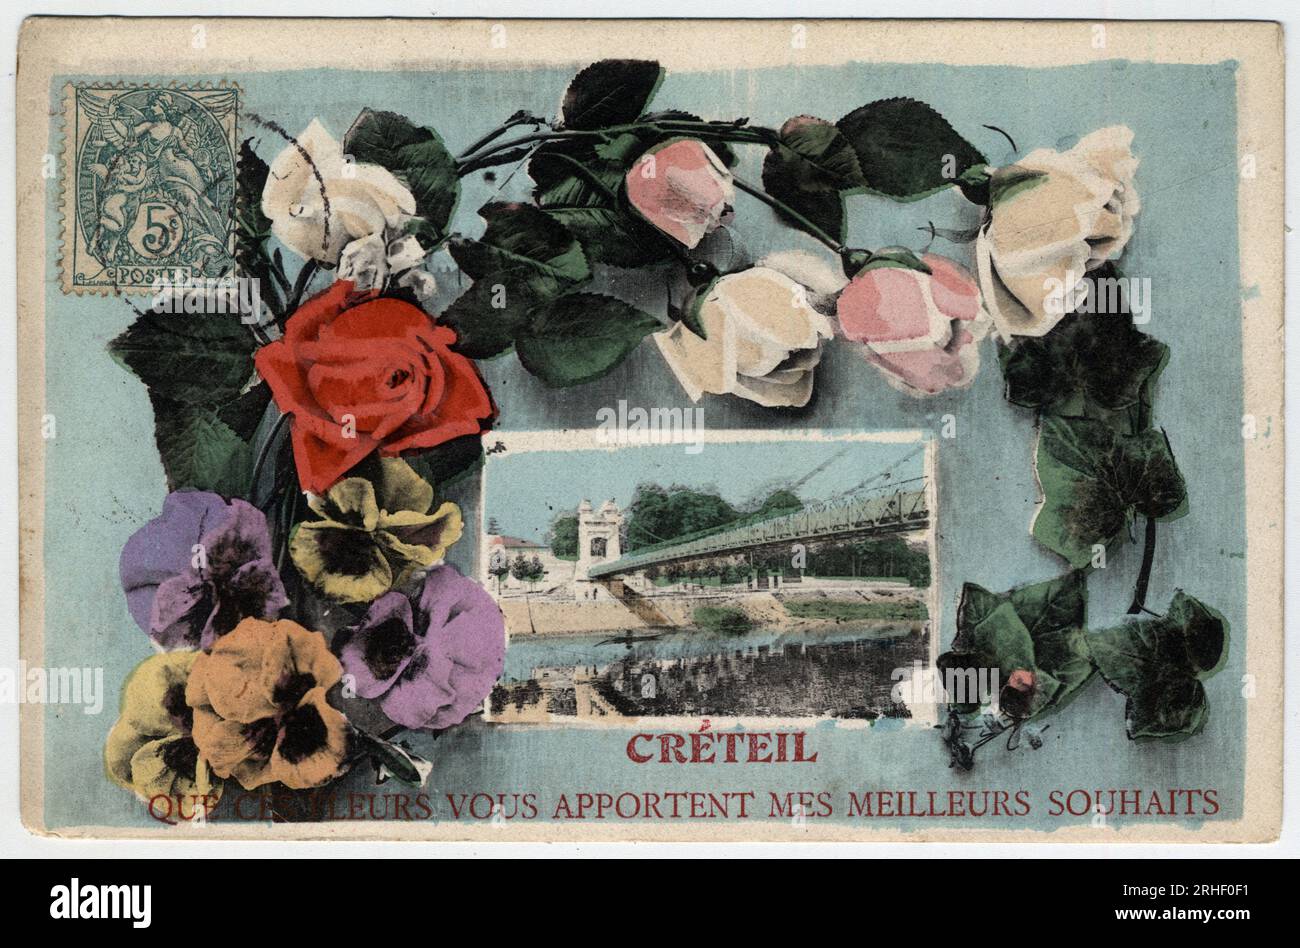 Ile de France, Val de Marne, Creteil : le pont de Creteil entoure d'une guirlande de fleurs - Carte postale fin 19eme-debut 20eme siecle Stock Photo